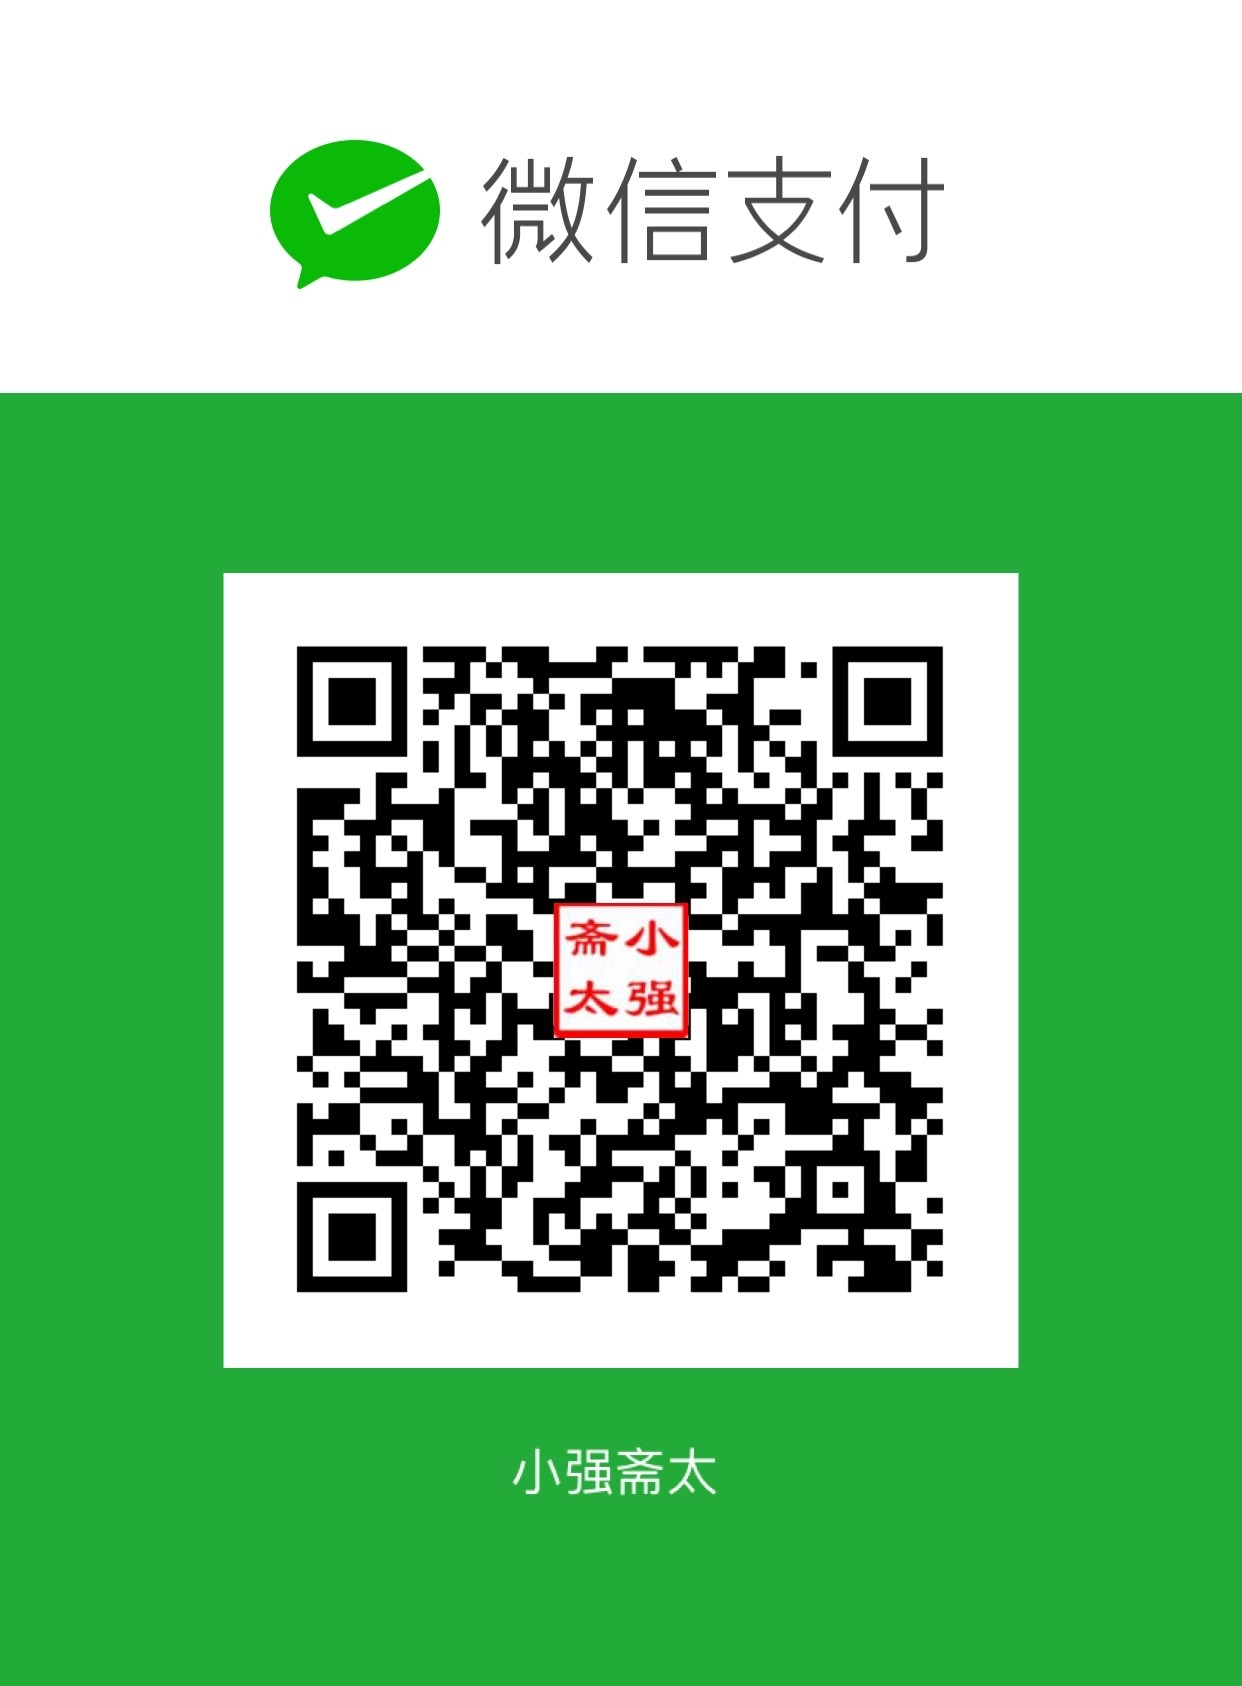 小强斋太 WeChat Pay